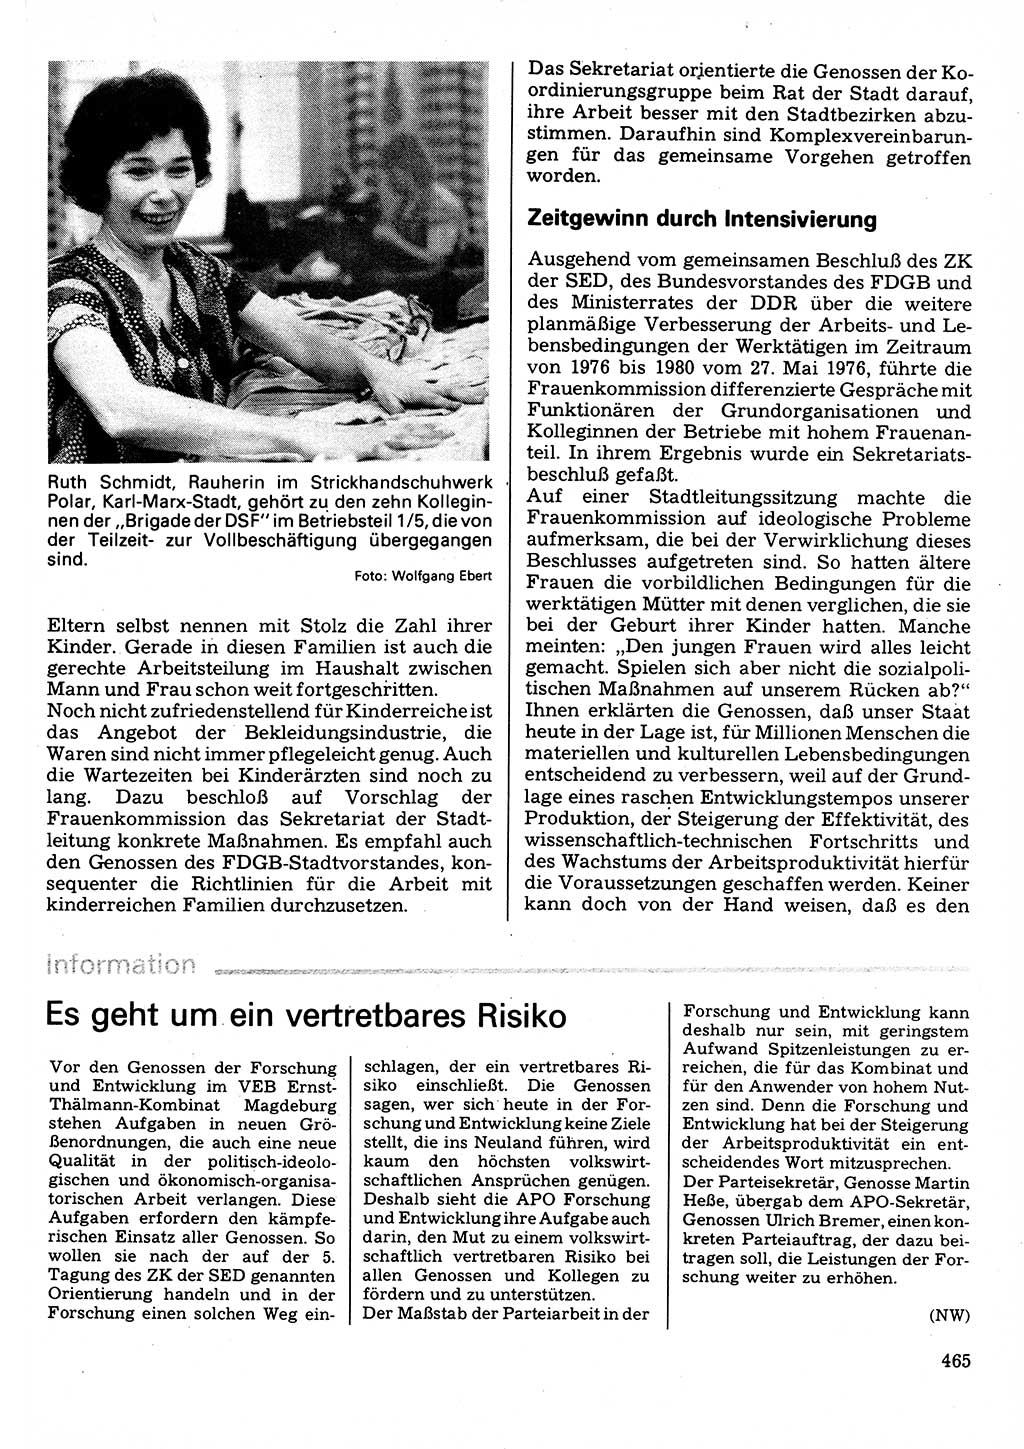 Neuer Weg (NW), Organ des Zentralkomitees (ZK) der SED (Sozialistische Einheitspartei Deutschlands) für Fragen des Parteilebens, 32. Jahrgang [Deutsche Demokratische Republik (DDR)] 1977, Seite 465 (NW ZK SED DDR 1977, S. 465)